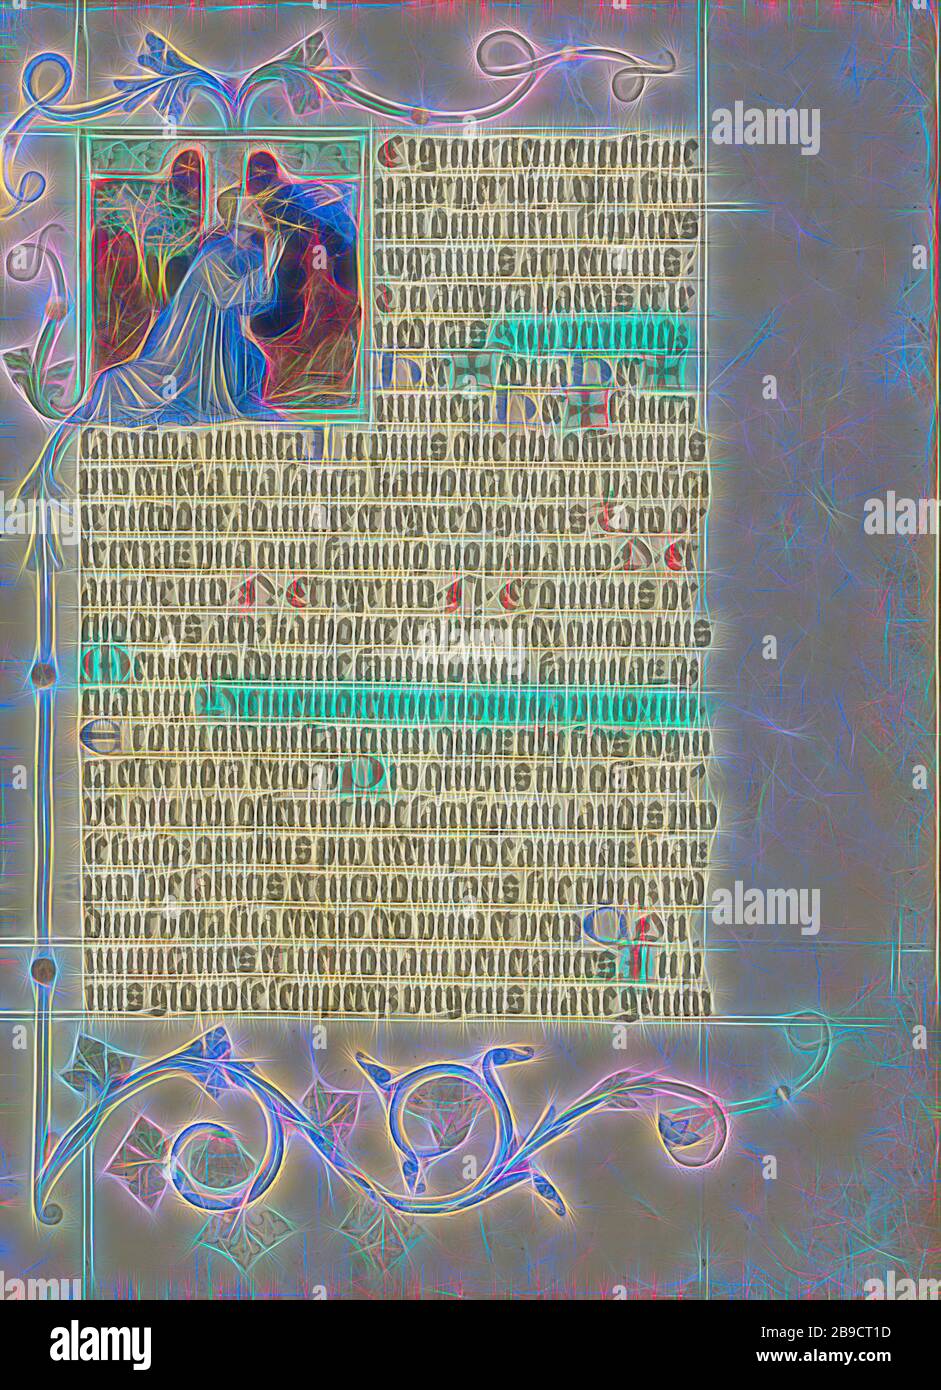 Initiale T: L'Agony dans le jardin, Maître Michael (autrichien, actif environ 1420 jusqu'au milieu du XVe siècle), Vienne, Autriche, environ 1420 - 1430, couleurs de Tempera, feuille d'or, et encre sur parchemin, feuille: 41,9 x 31 cm (16 1,2 x 12 3,16 po, repensé par Gibon, design de gaie chaleureuse de luminosité et de rayonnement de rayons lumineux. L'art classique réinventé avec une touche moderne. La photographie inspirée du futurisme, qui embrasse l'énergie dynamique de la technologie moderne, du mouvement, de la vitesse et révolutionne la culture. Banque D'Images